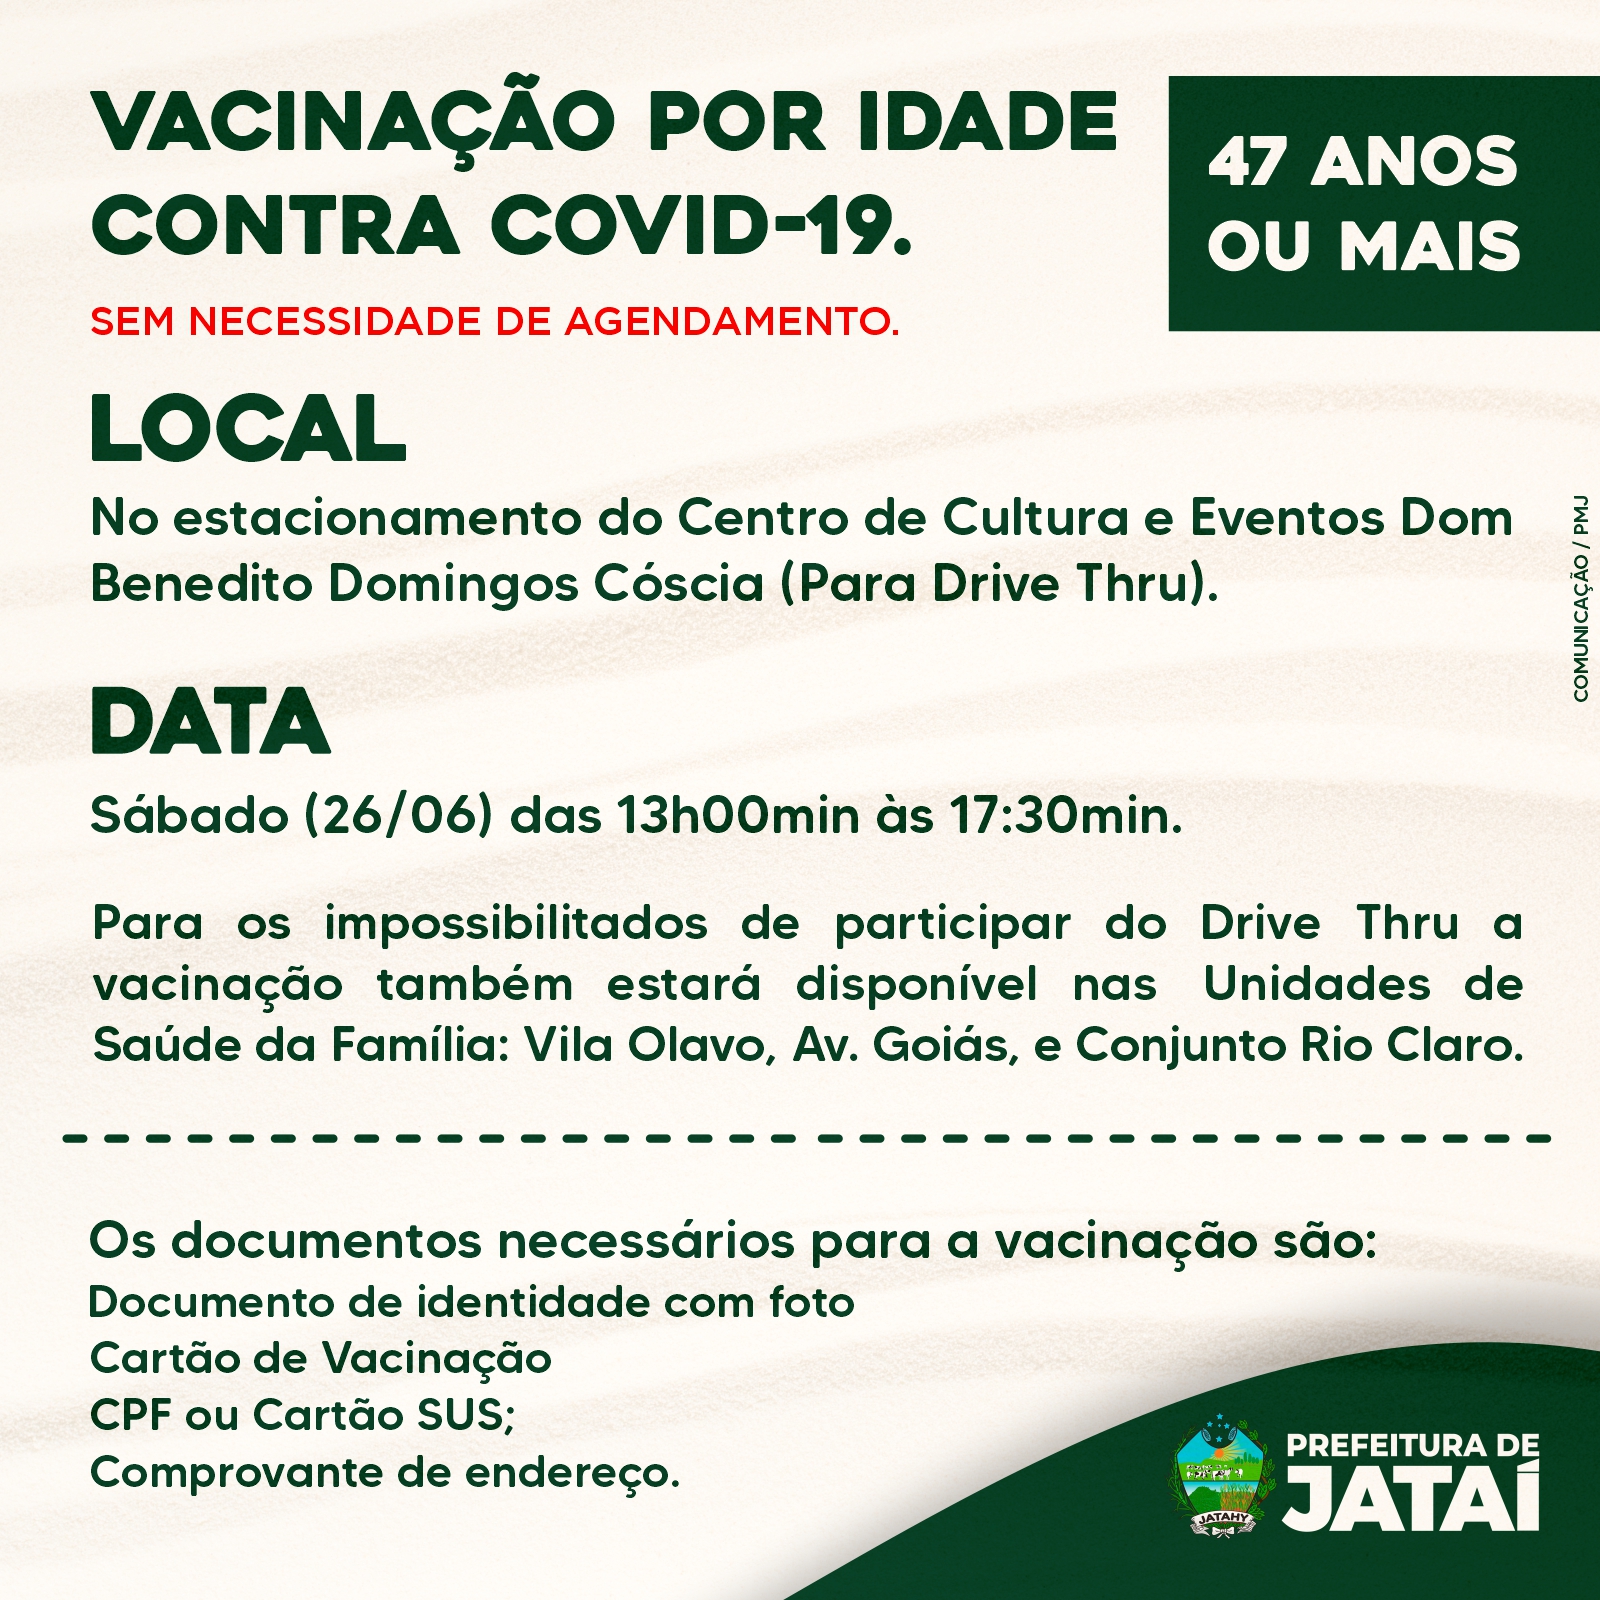 Prefeitura de São José realiza teste de Covid-19 em população de baixa renda